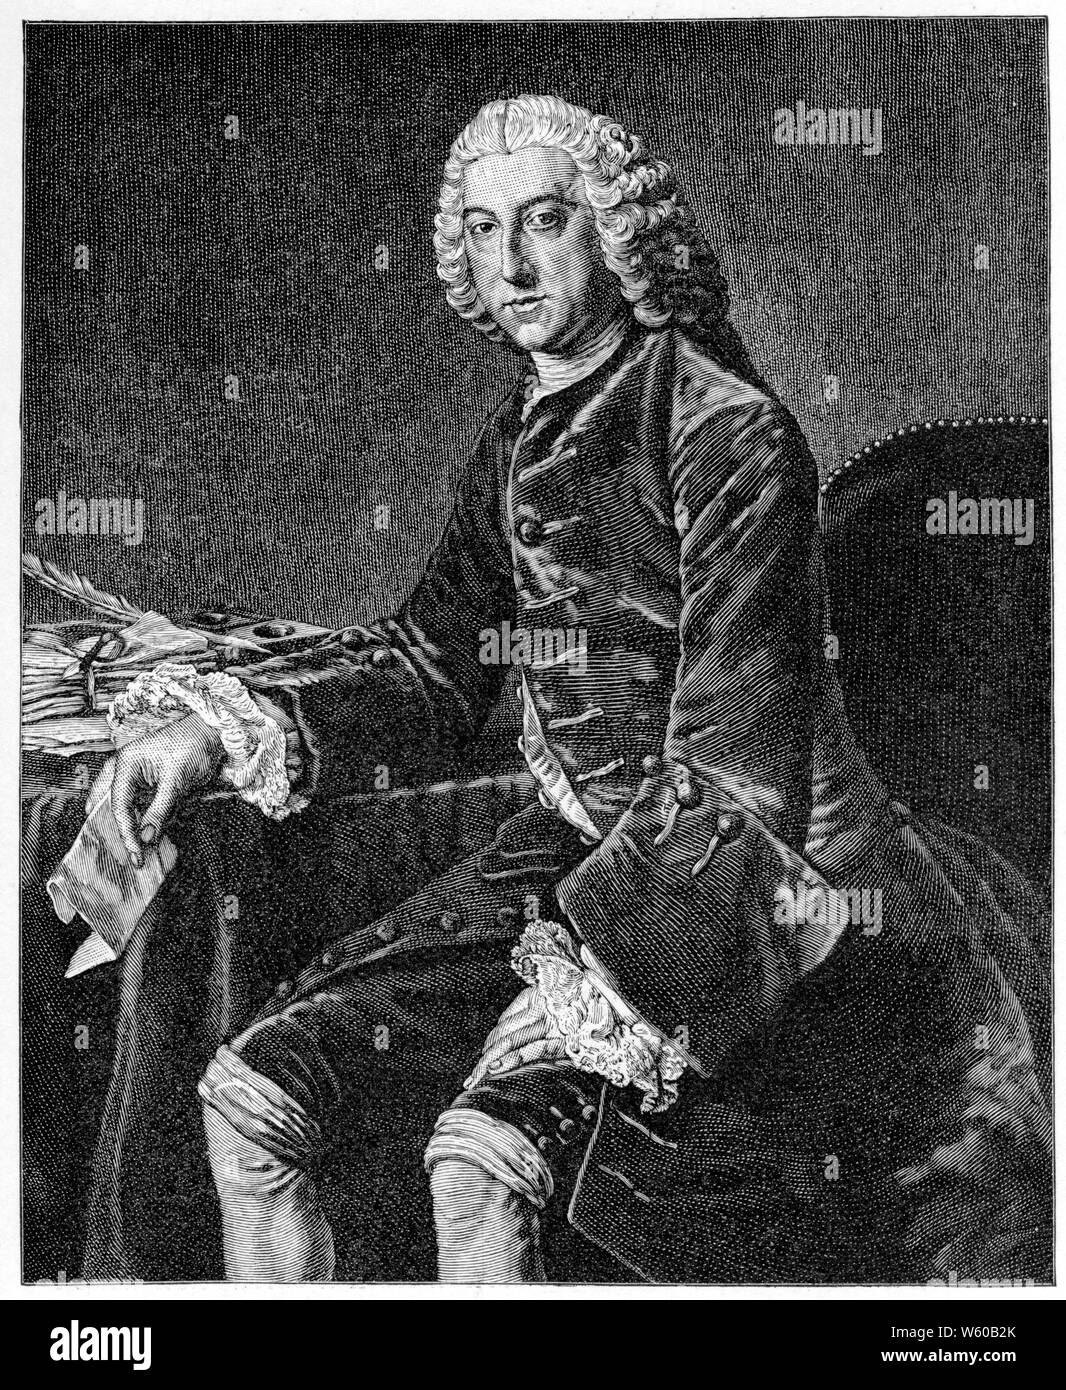 William Pitt, 1st Earl of Chatham, c1754. Nach dem Studio von William Hoare (c1707-173). William Pitt, britischer Staatsmann der Whig Gruppe, der Mitte des 18. Jahrhunderts als Premierminister Großbritanniens tätig war. Er ist auch als Pitt von Chatham oder William Pitt der ältere bekannt, um ihn von seinem Sohn William Pitt dem Jüngeren zu unterscheiden, der ebenfalls Premierminister war. Stockfoto